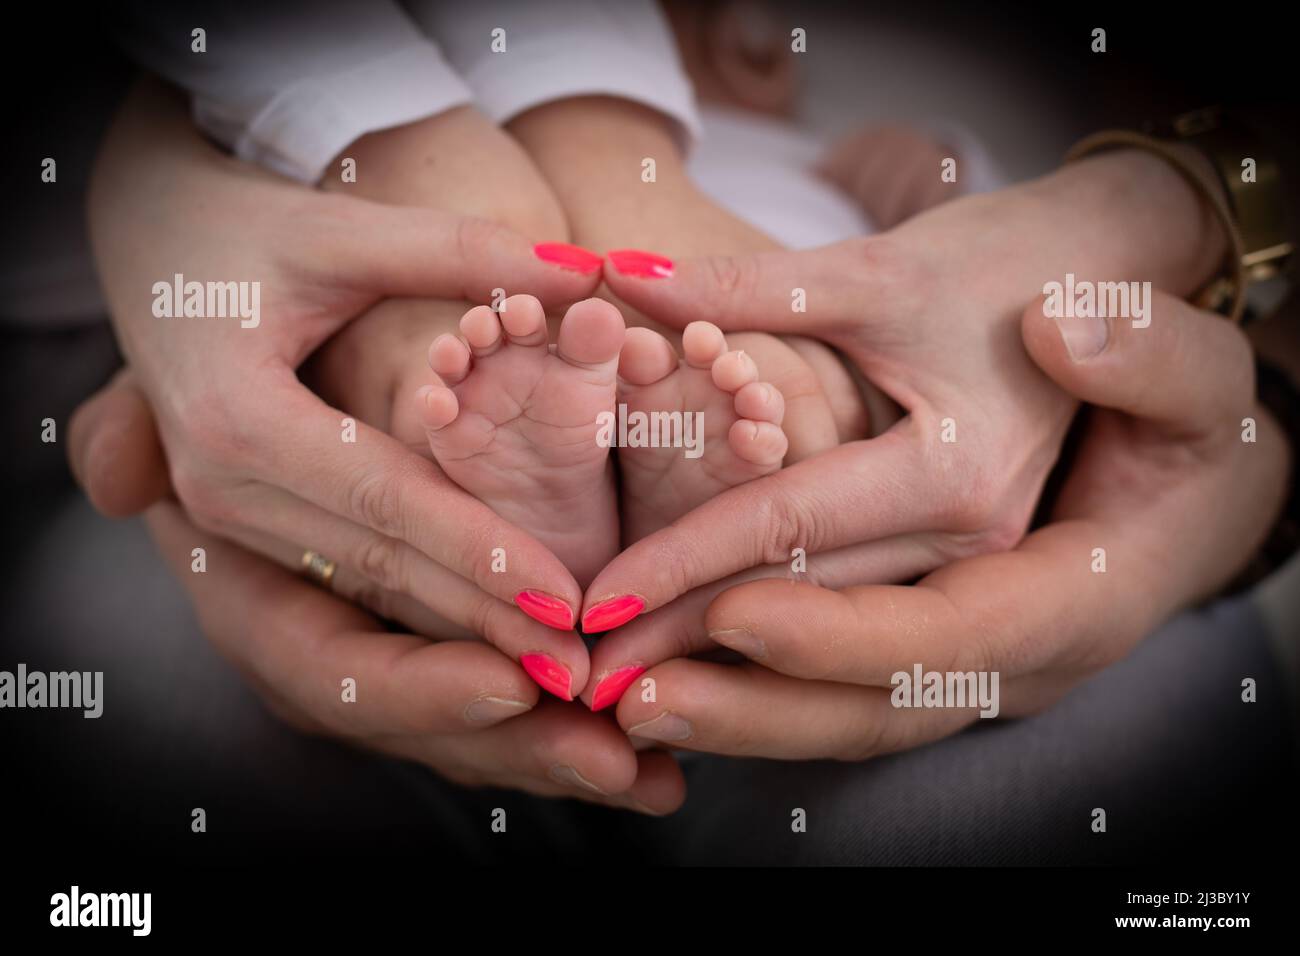 Junge unkenntliche Familie von Mutter Vater und Kind. Mama, Papa und Kind halten Beine, Fuß des neugeborenen Babys Stockfoto